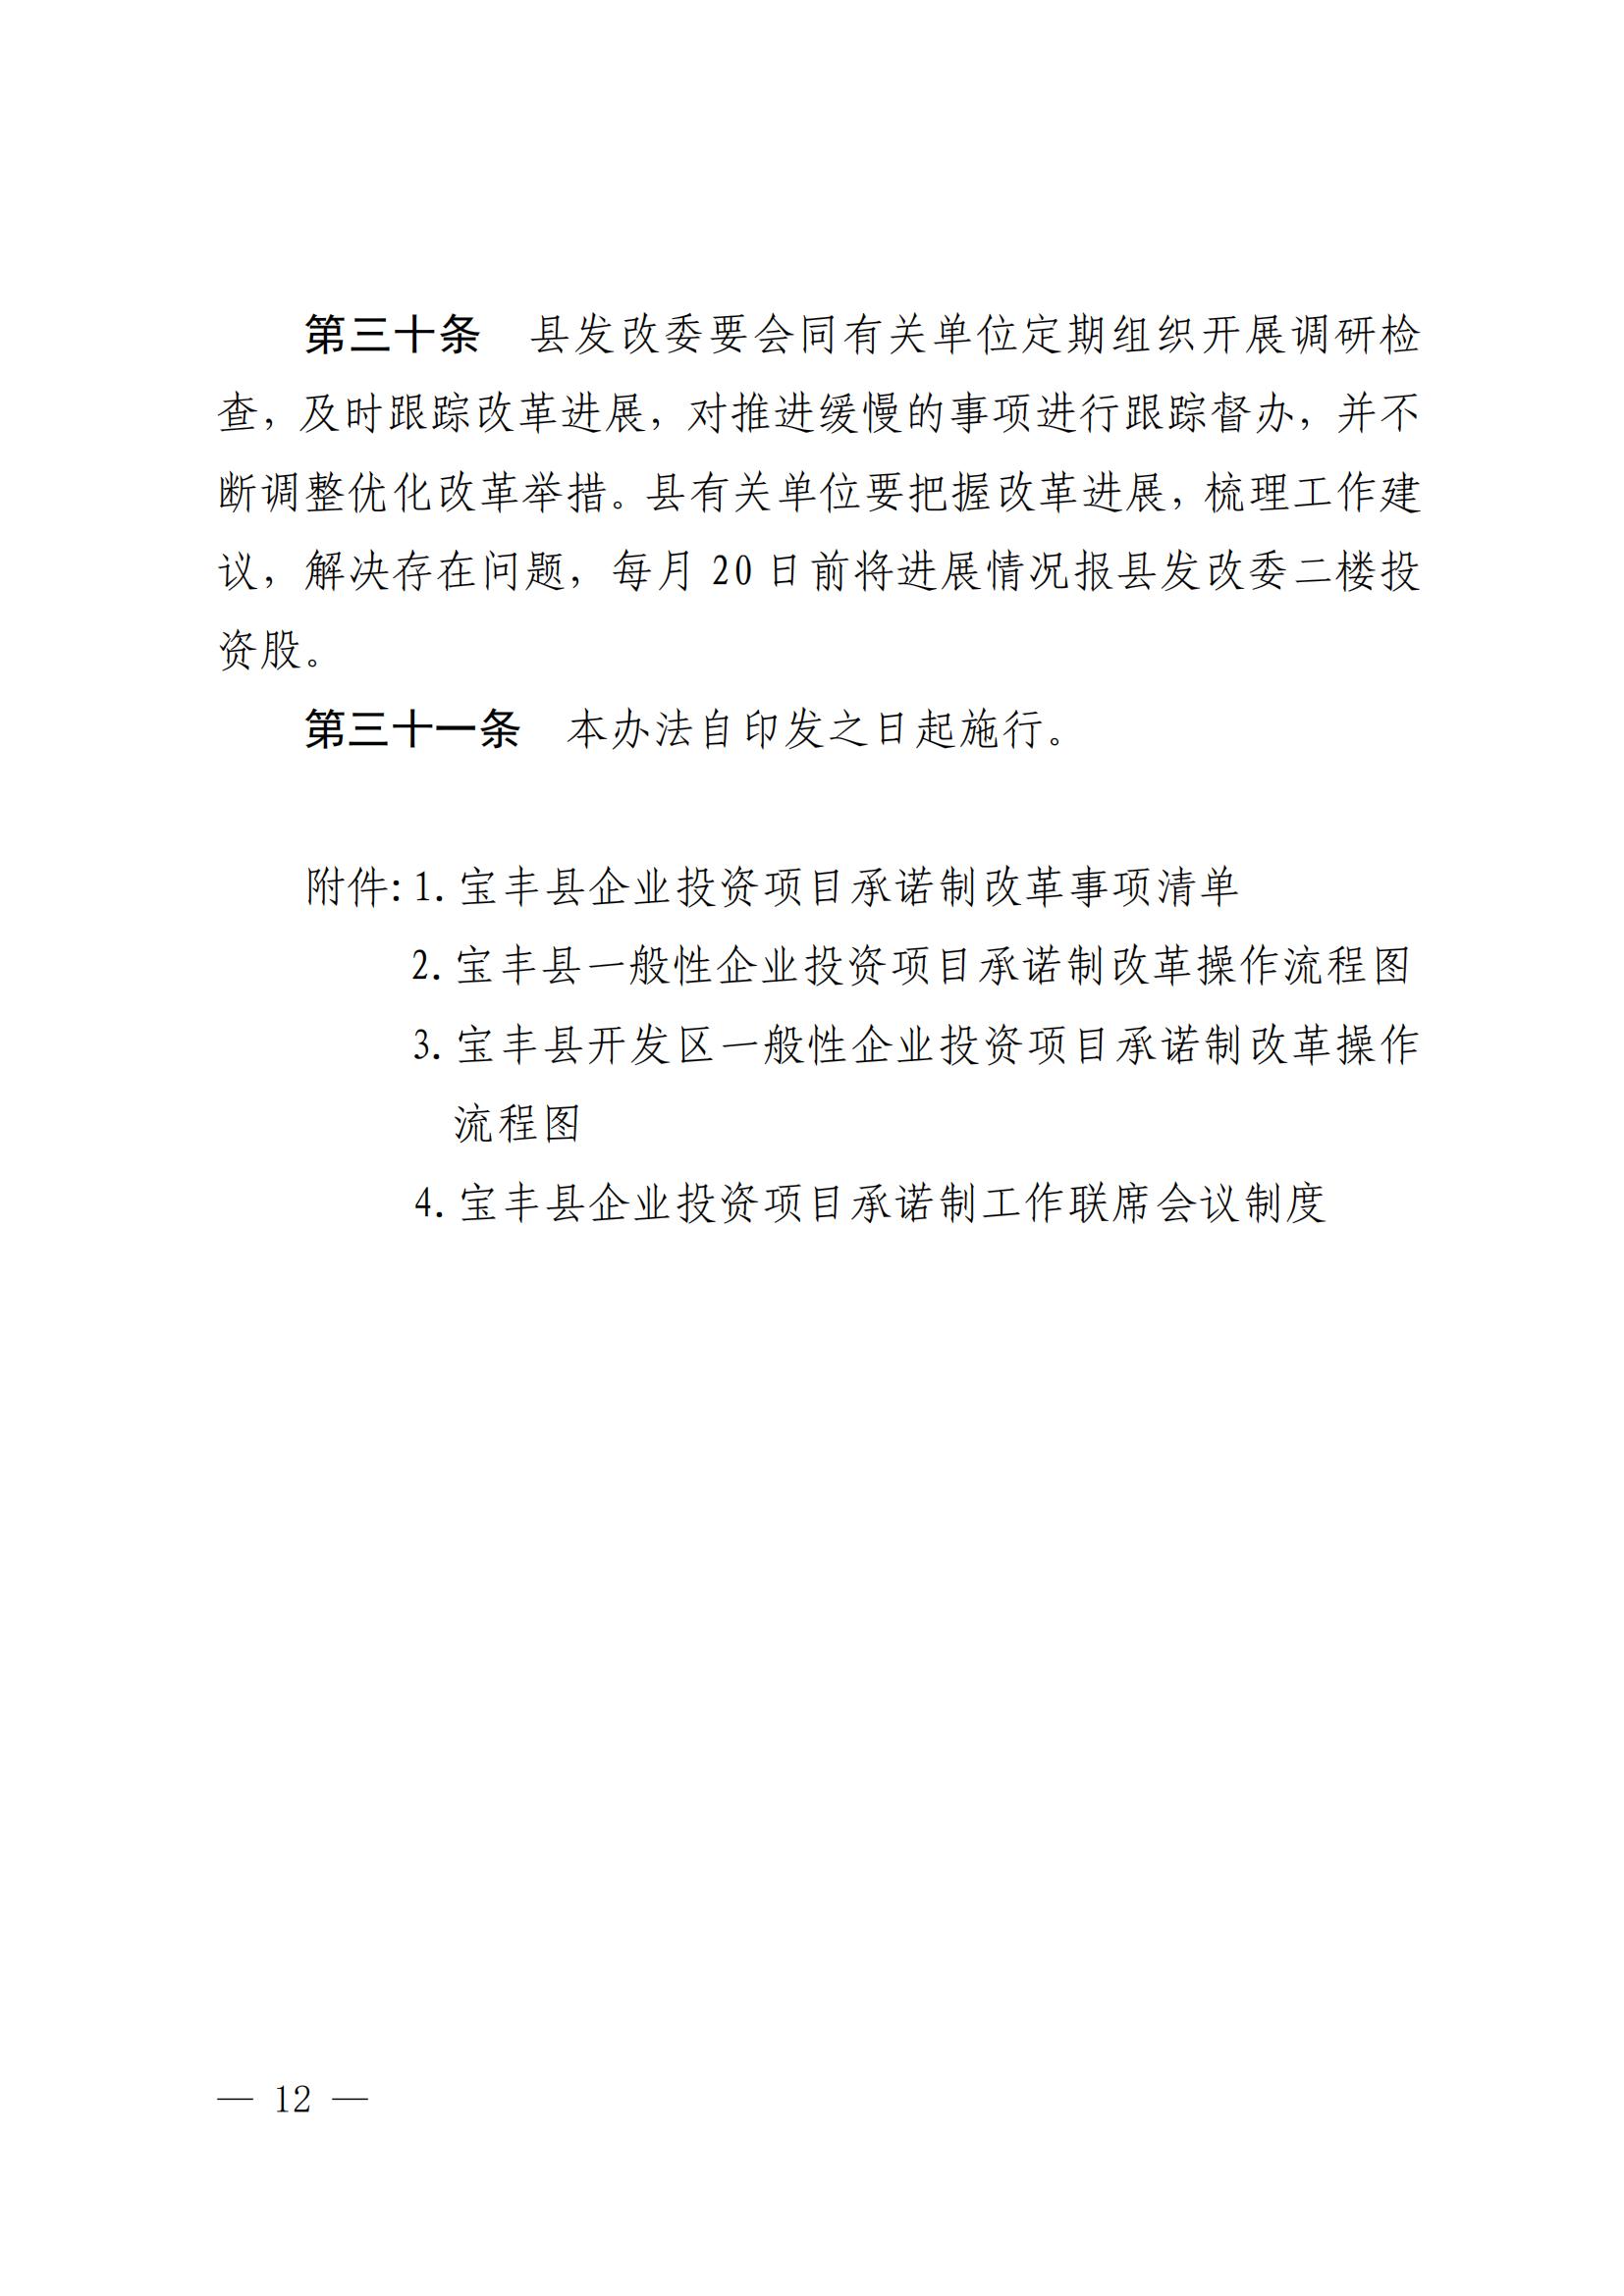 宝丰县发展和改革委员会关于征求《宝丰县企业投资项目承诺制改革实施办法（征求意见稿）》意见建议的通知_11.jpg